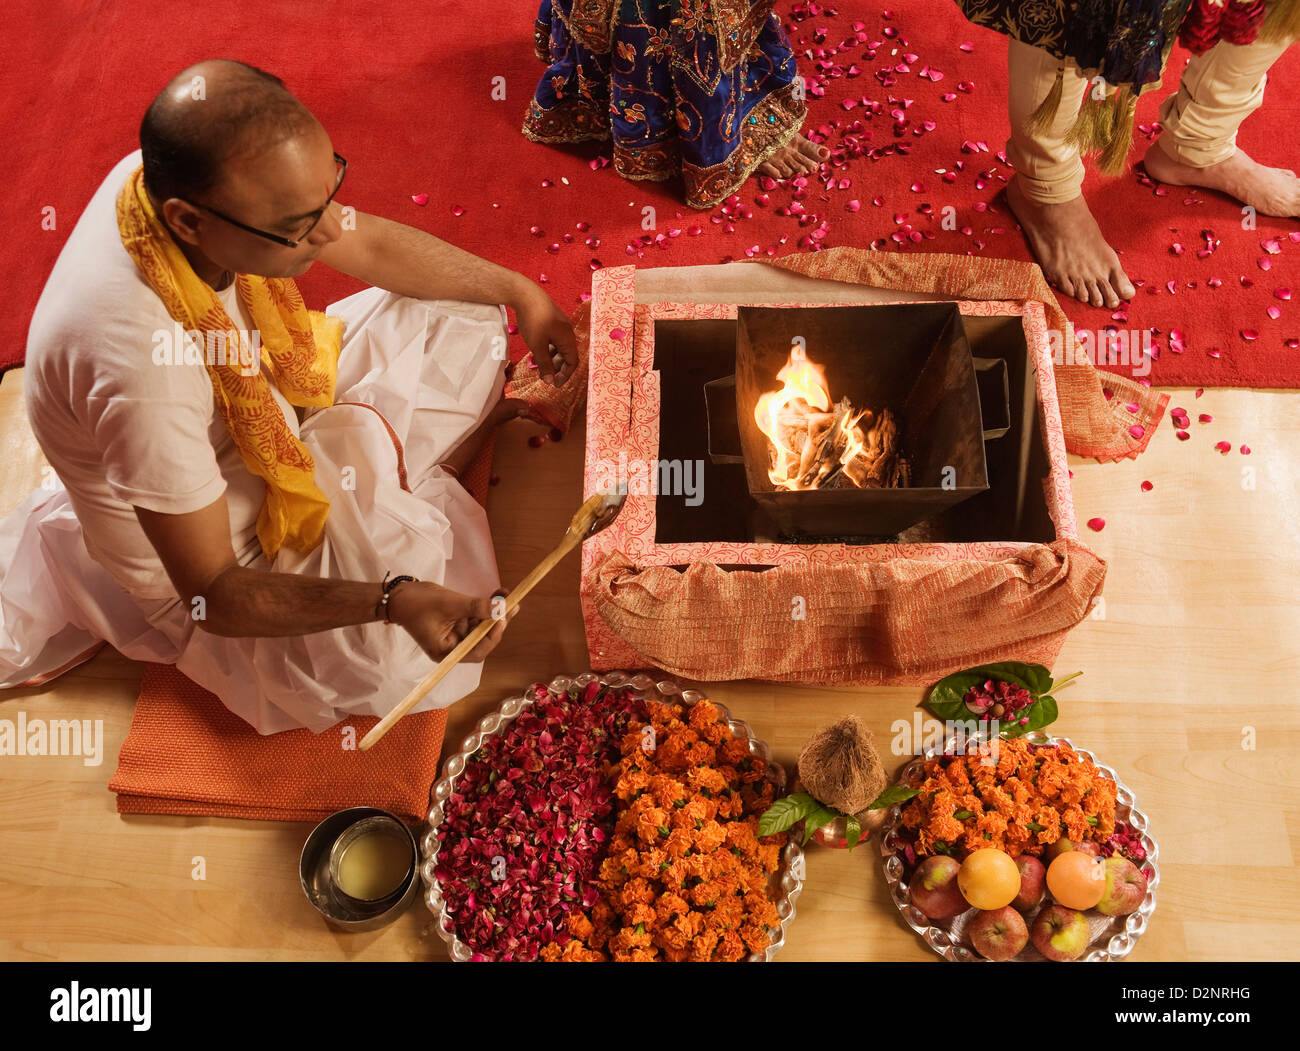 Priest performing religious ceremony in wedding mandap Stock Photo